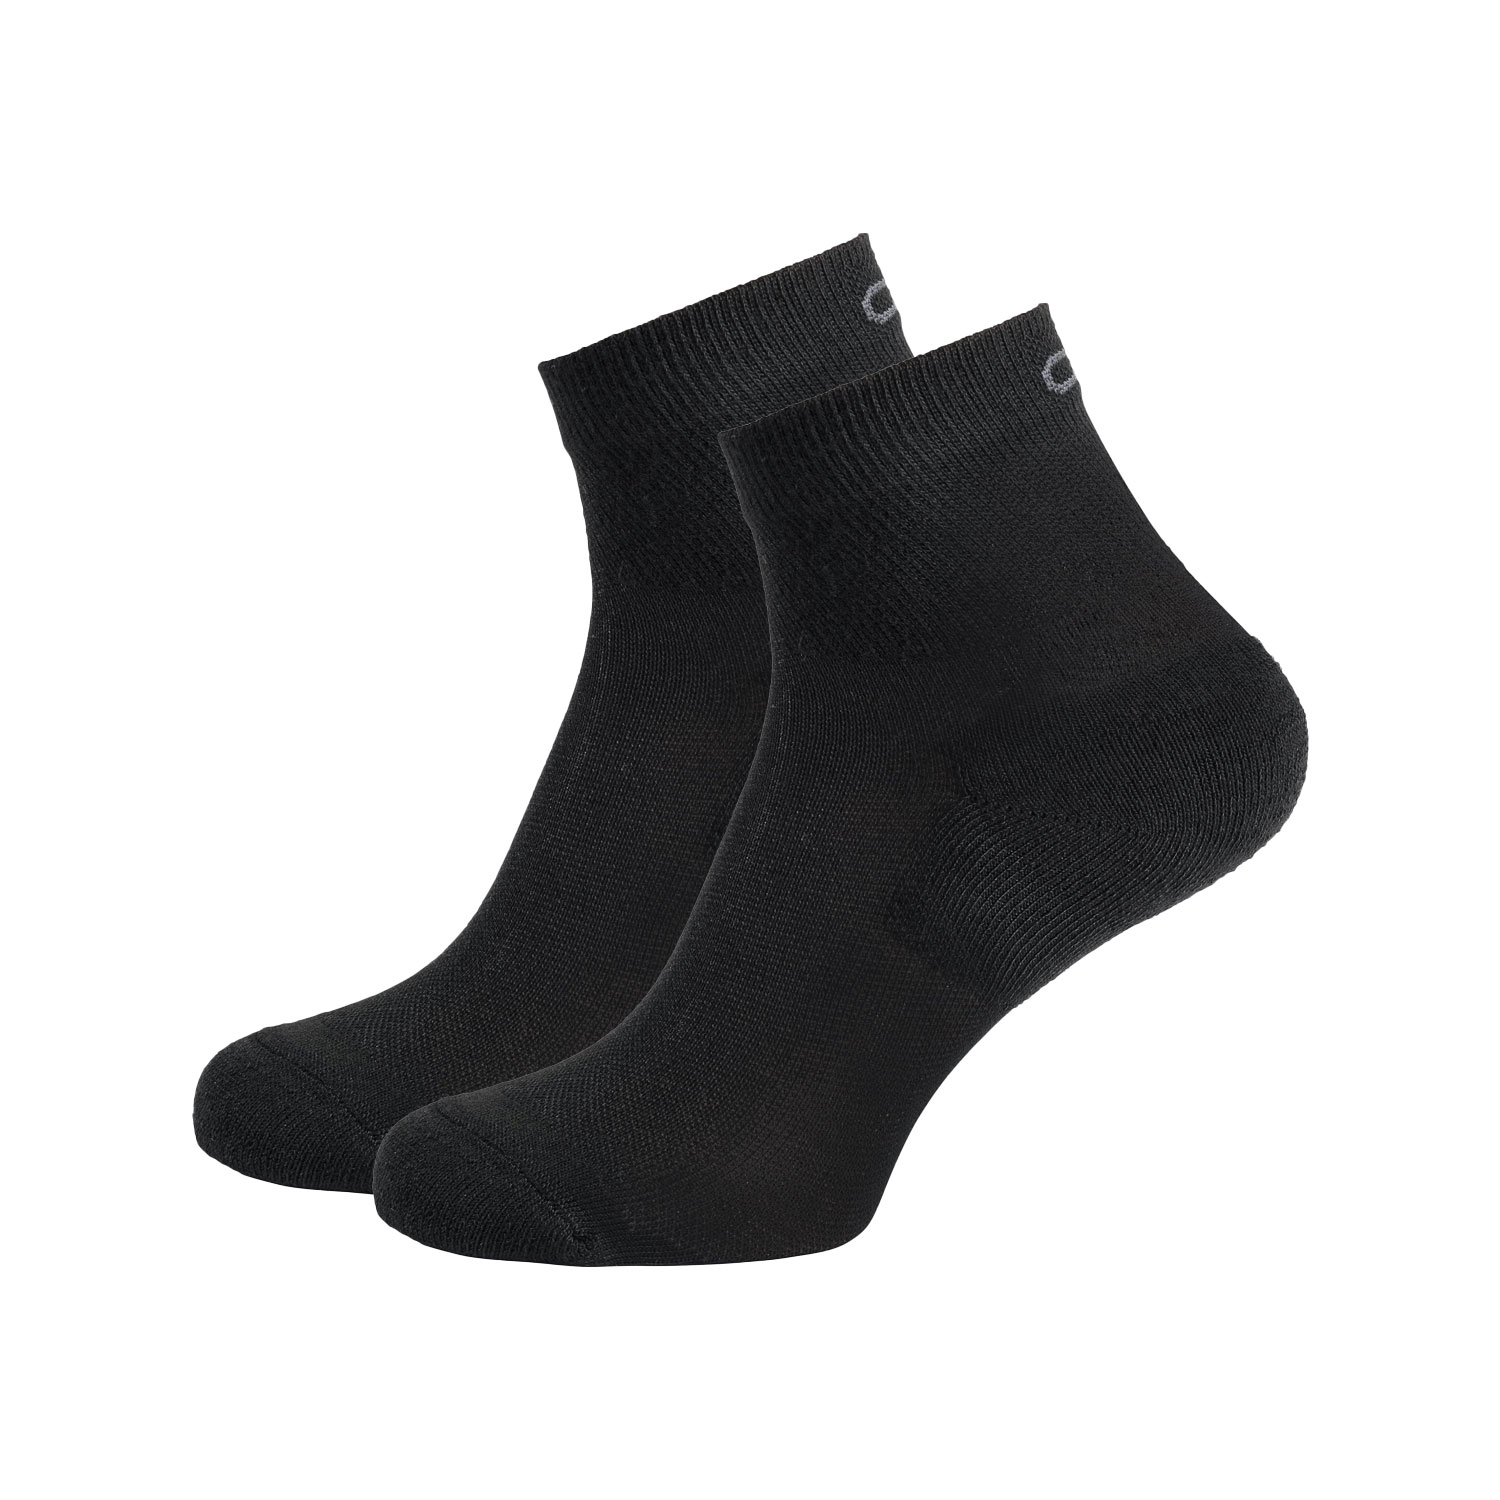 Odlo Active x 2 Socks - Black